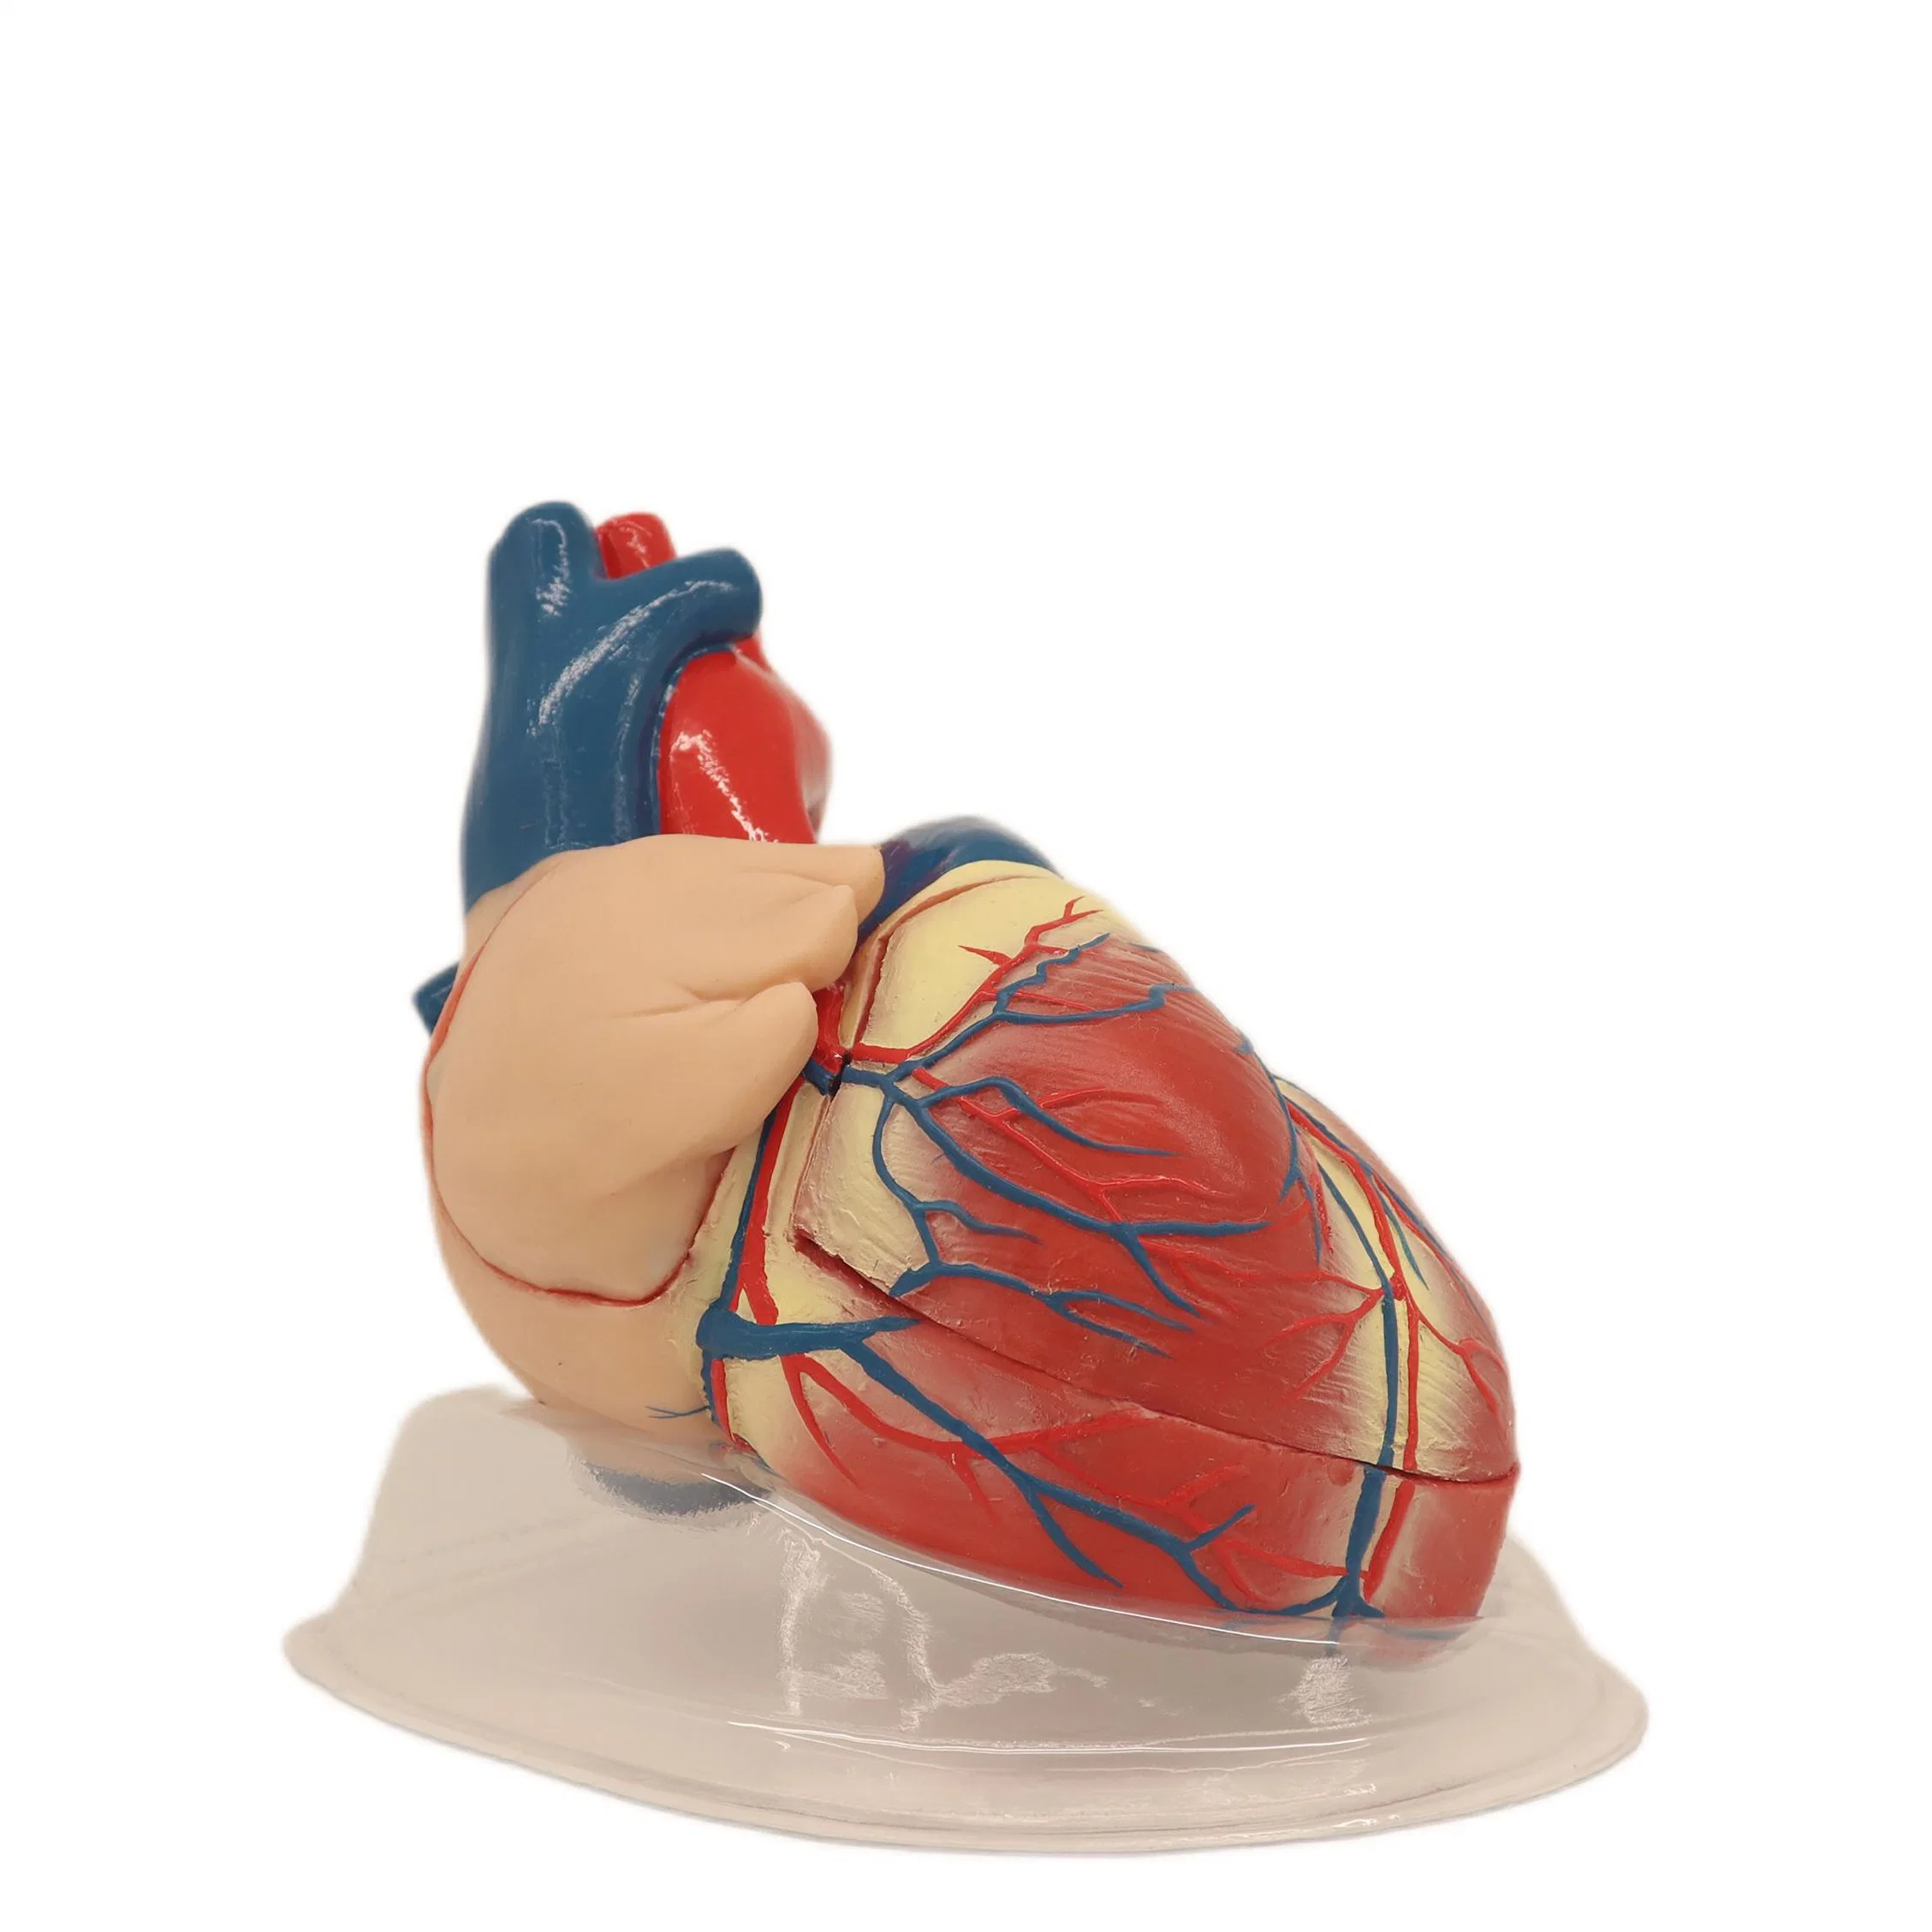 Modelo anatómico Humam de PVC de suporte forte modelo de dissecção cardíaca